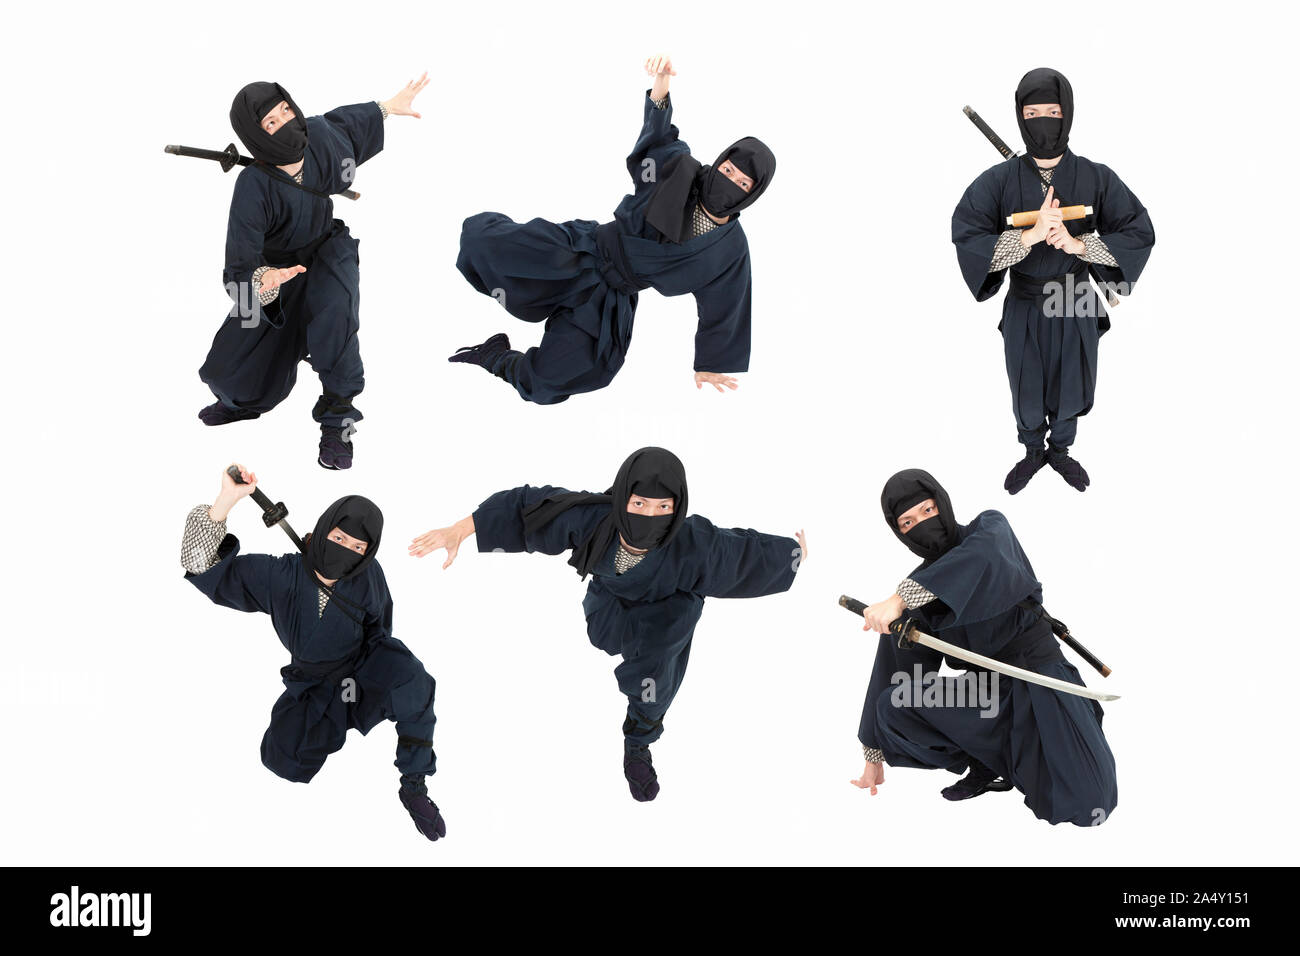 Ninja pose immagini e fotografie stock ad alta risoluzione - Alamy